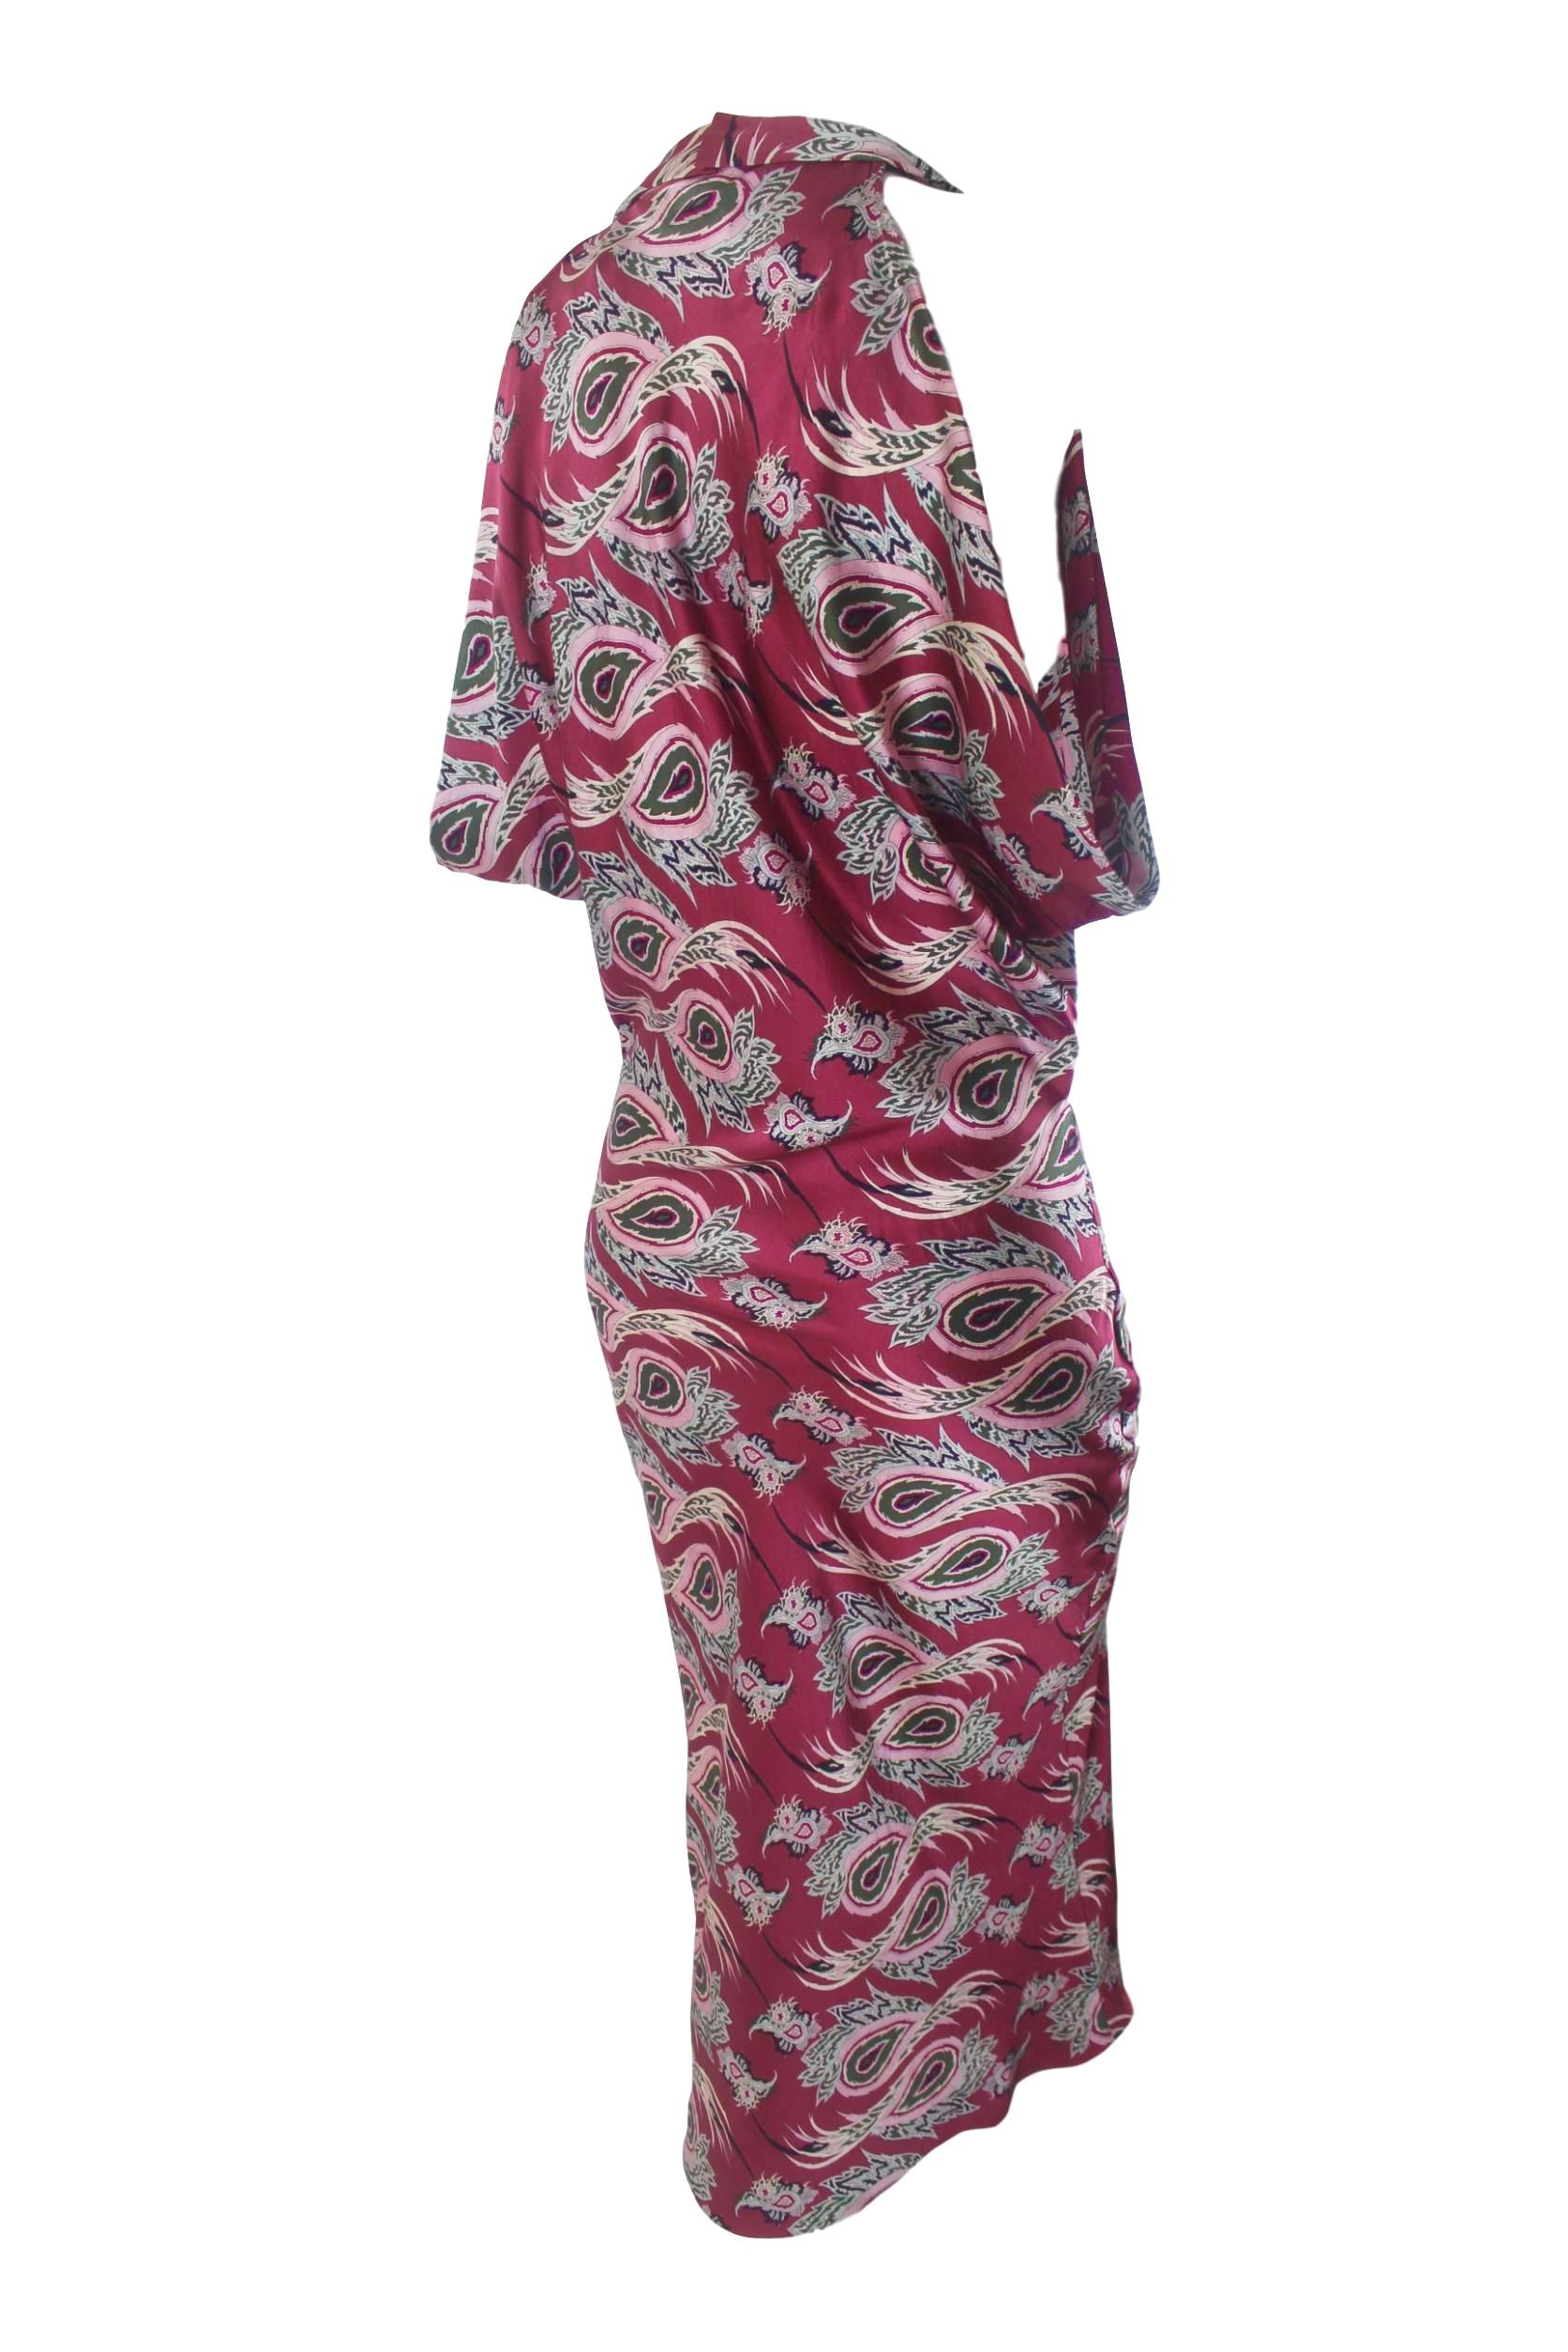 Women's Alexander McQueen Paisley Silk Evening Dress 2001 For Sale